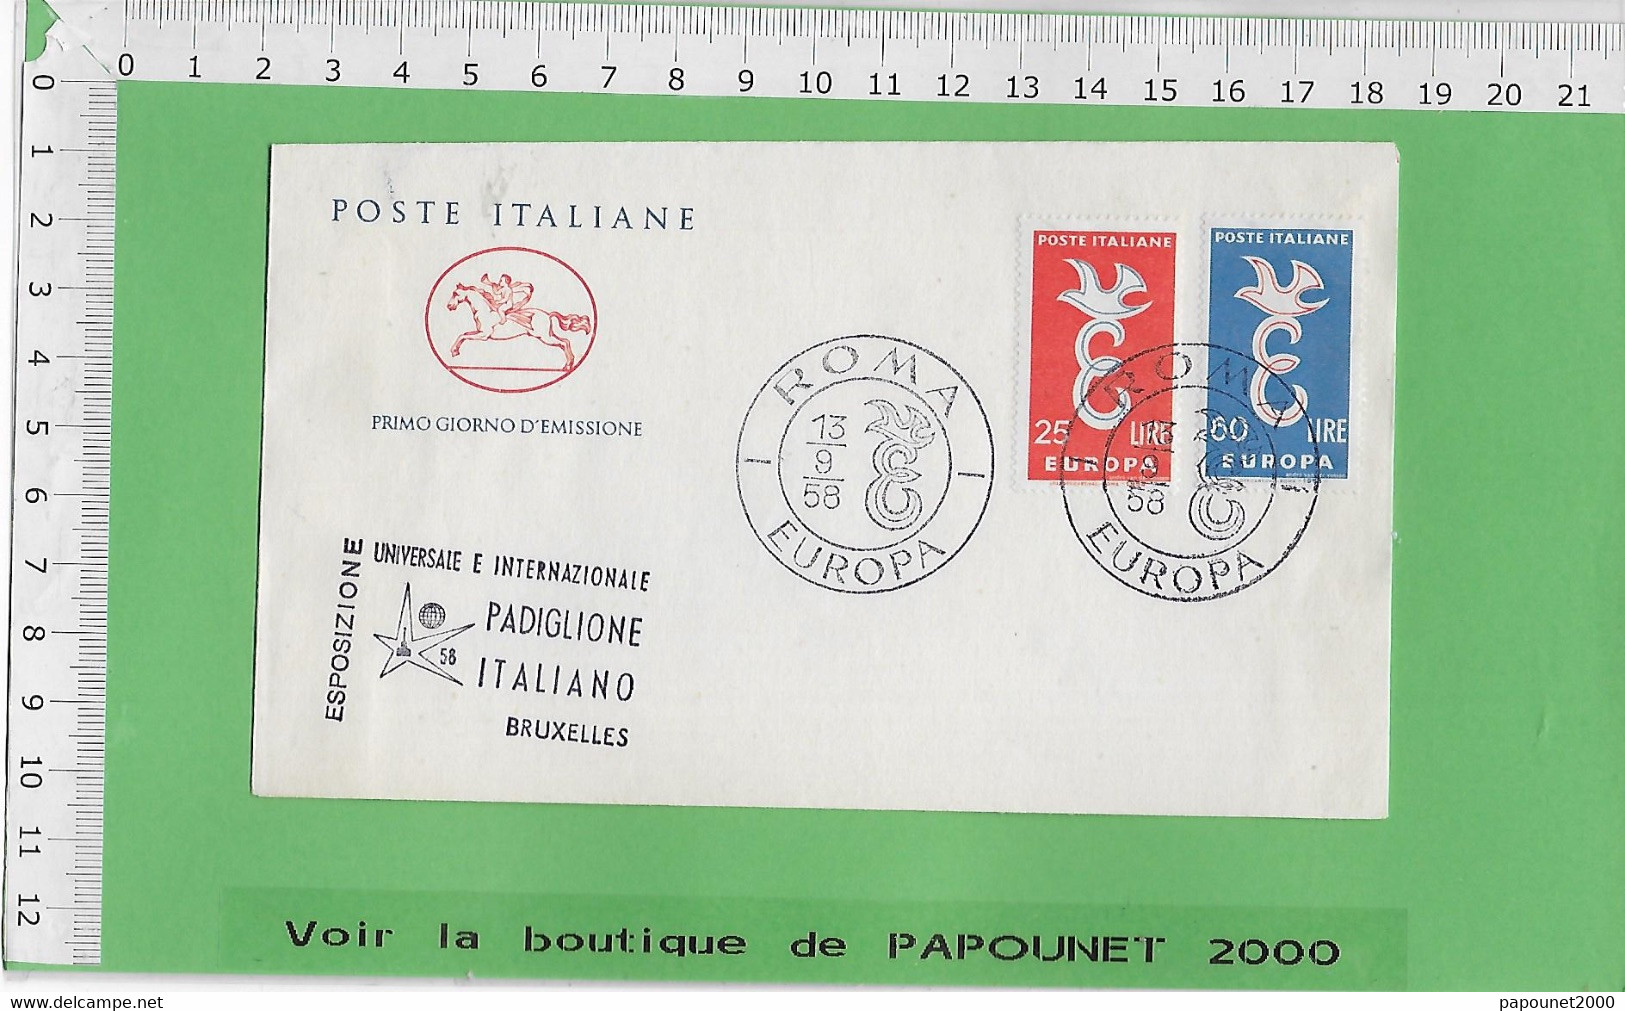 02578 - E BE04 1000-EXPO 58 : Timbre*Enveloppe / PRIMO GIORNO D EMISSIONE: PAVILLON ITALIEN - 1958 – Bruxelles (Belgique)